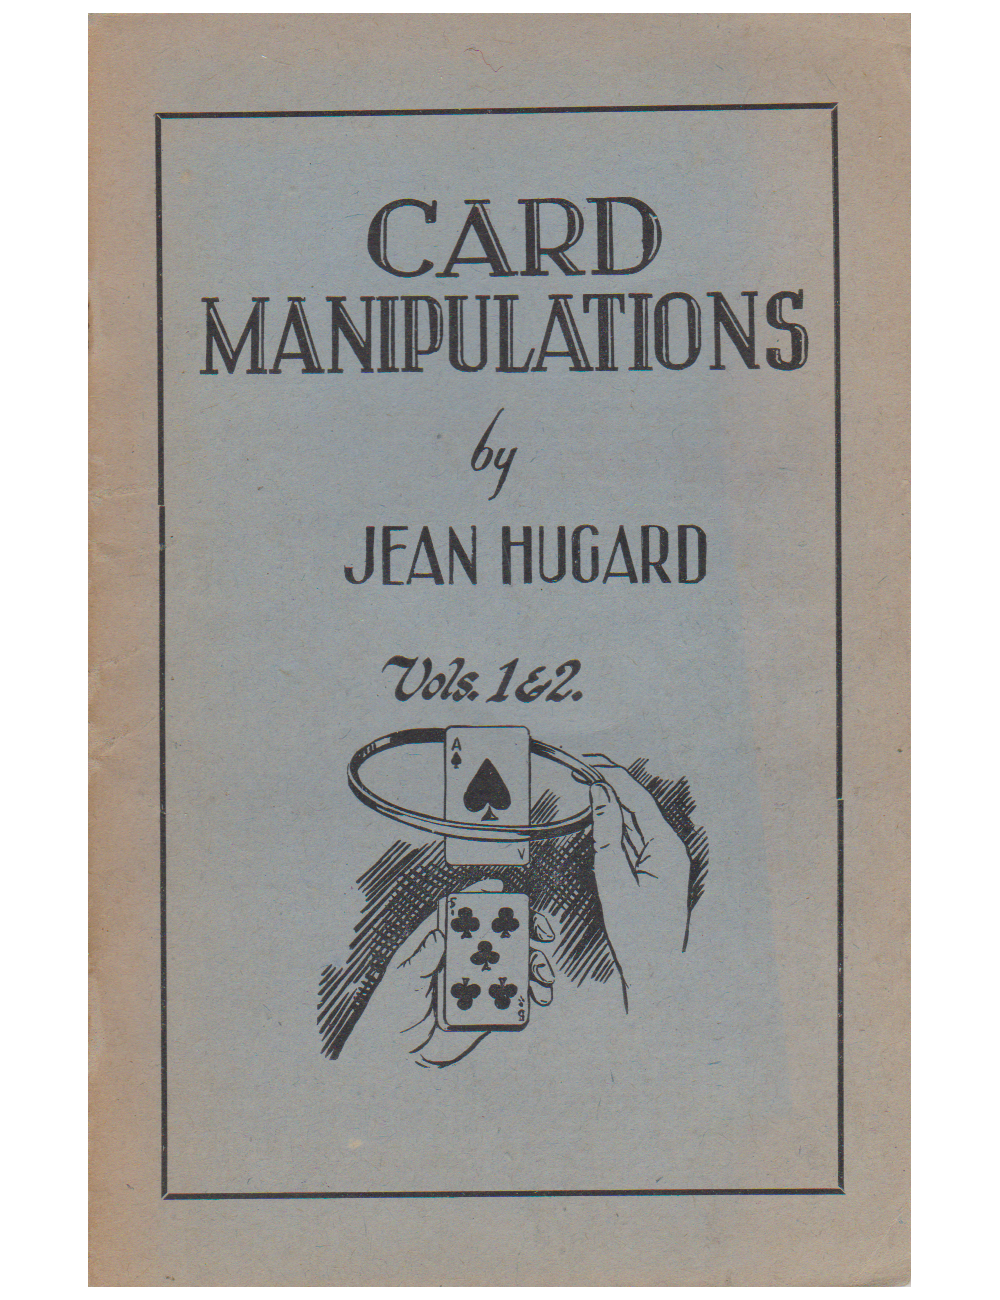 CARD MANIPULATIONS Vols. 1, 2, 3, 4, 5 (JEAN HUGARD)